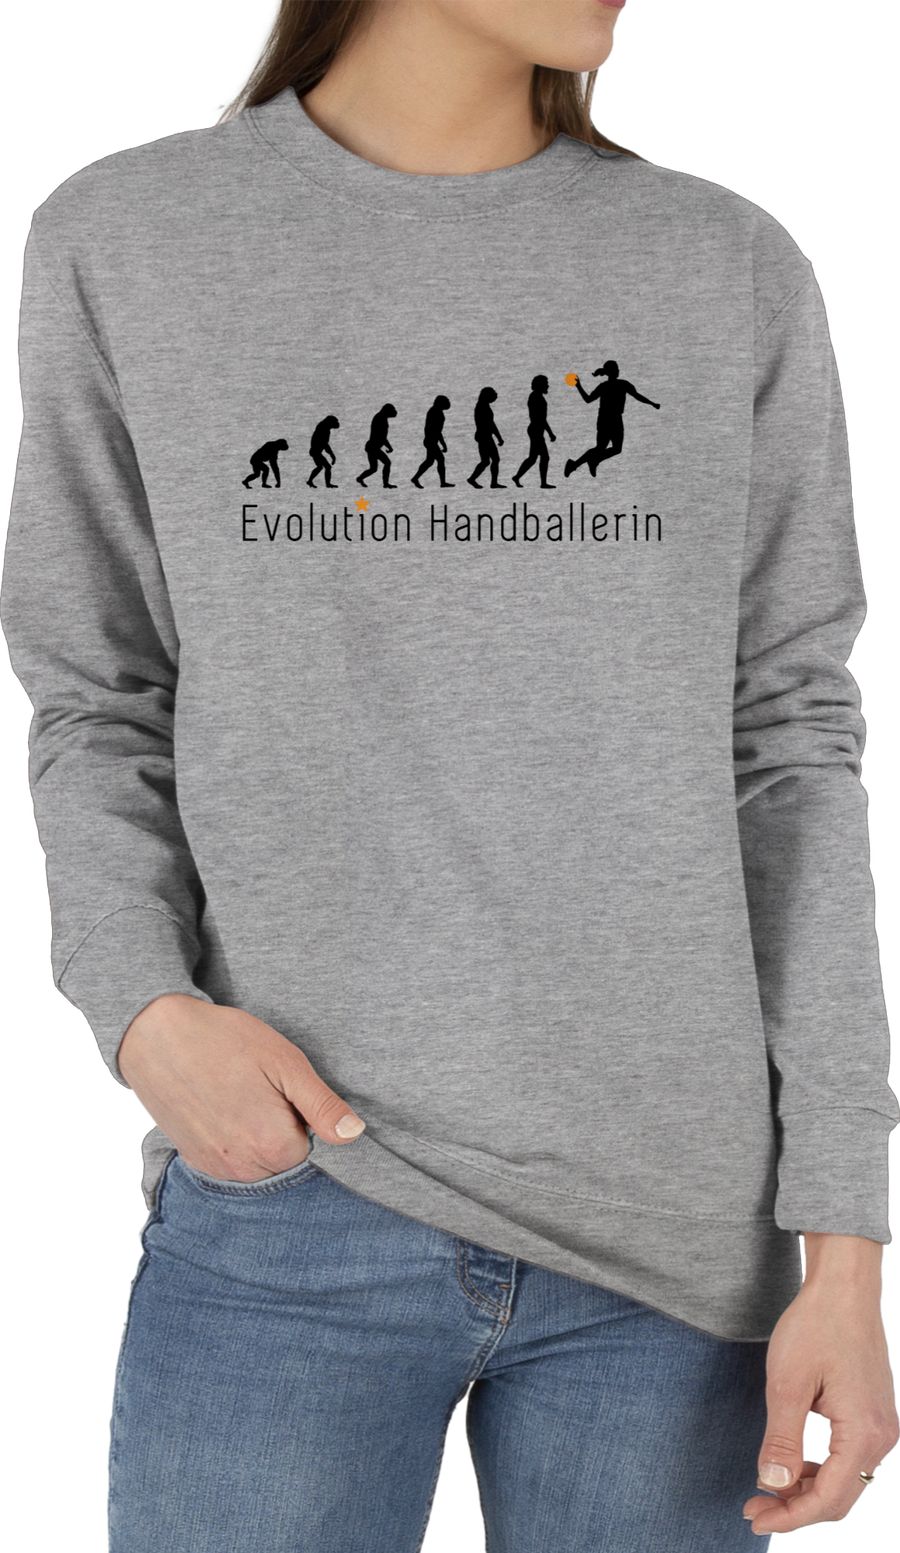 Handballerin Evolution Wurf